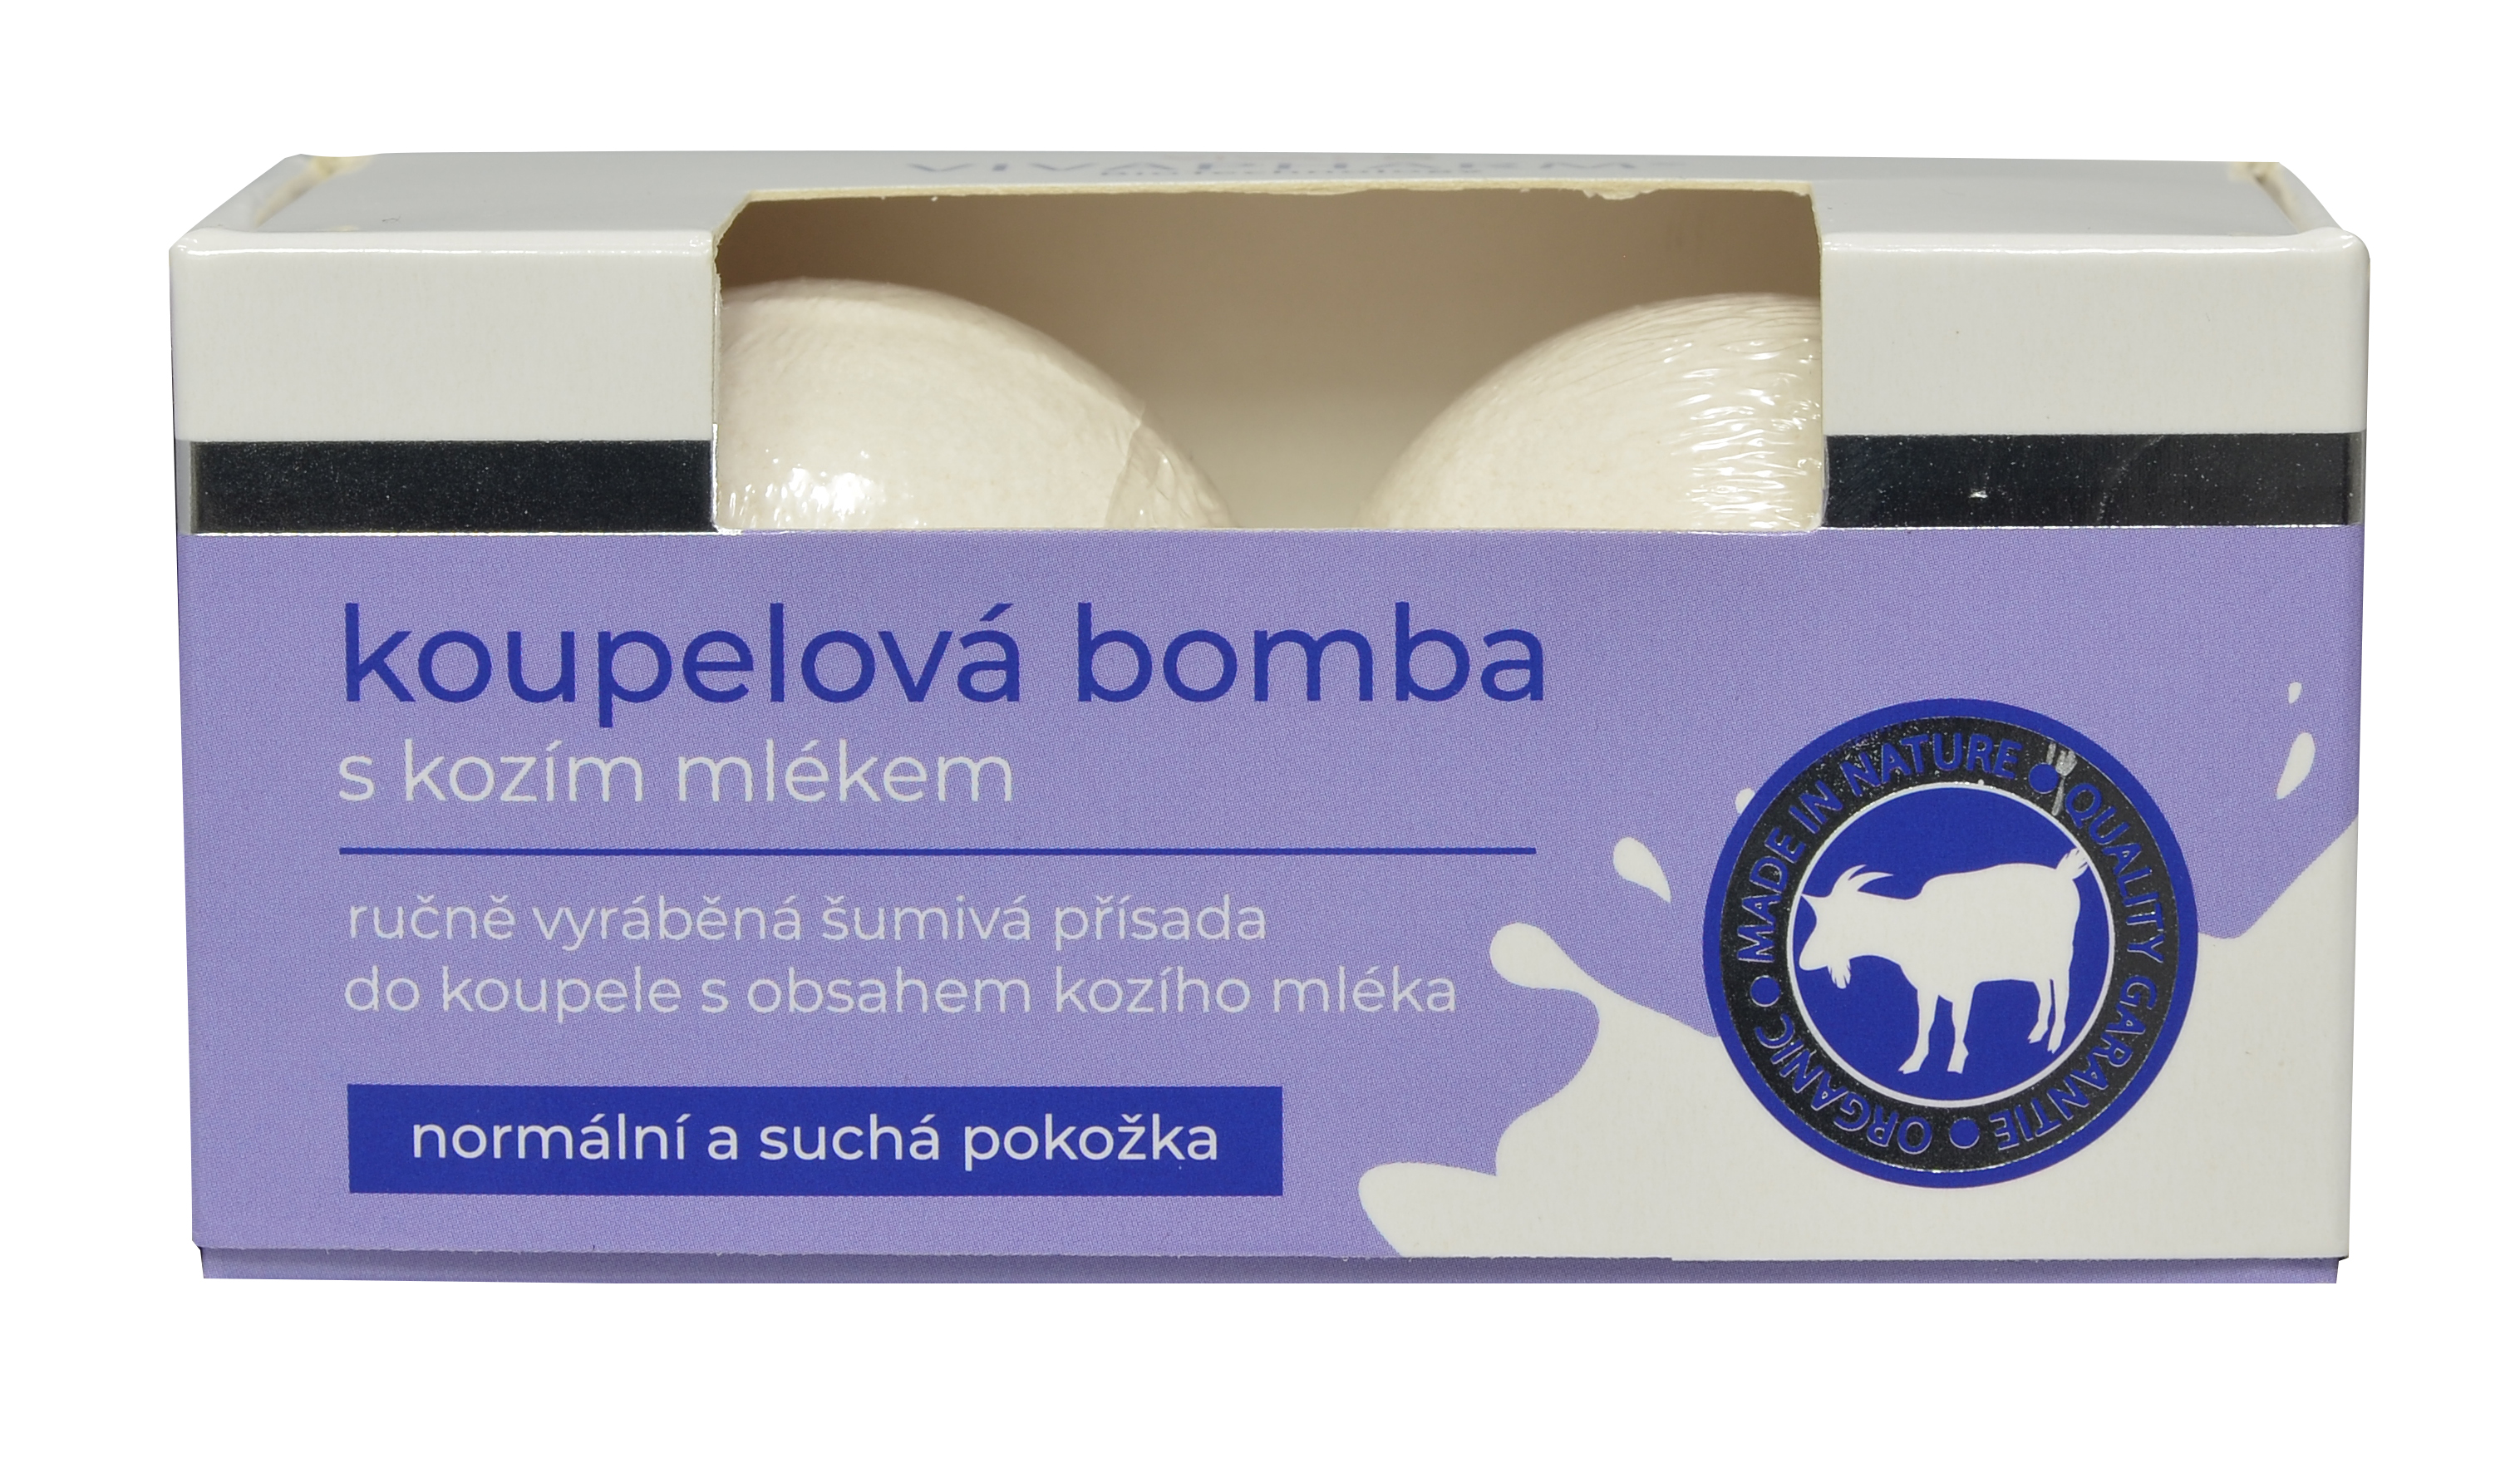 Vivaco Sada - Šumivé koupelové bomby s kozím mlékem 2 x 75g